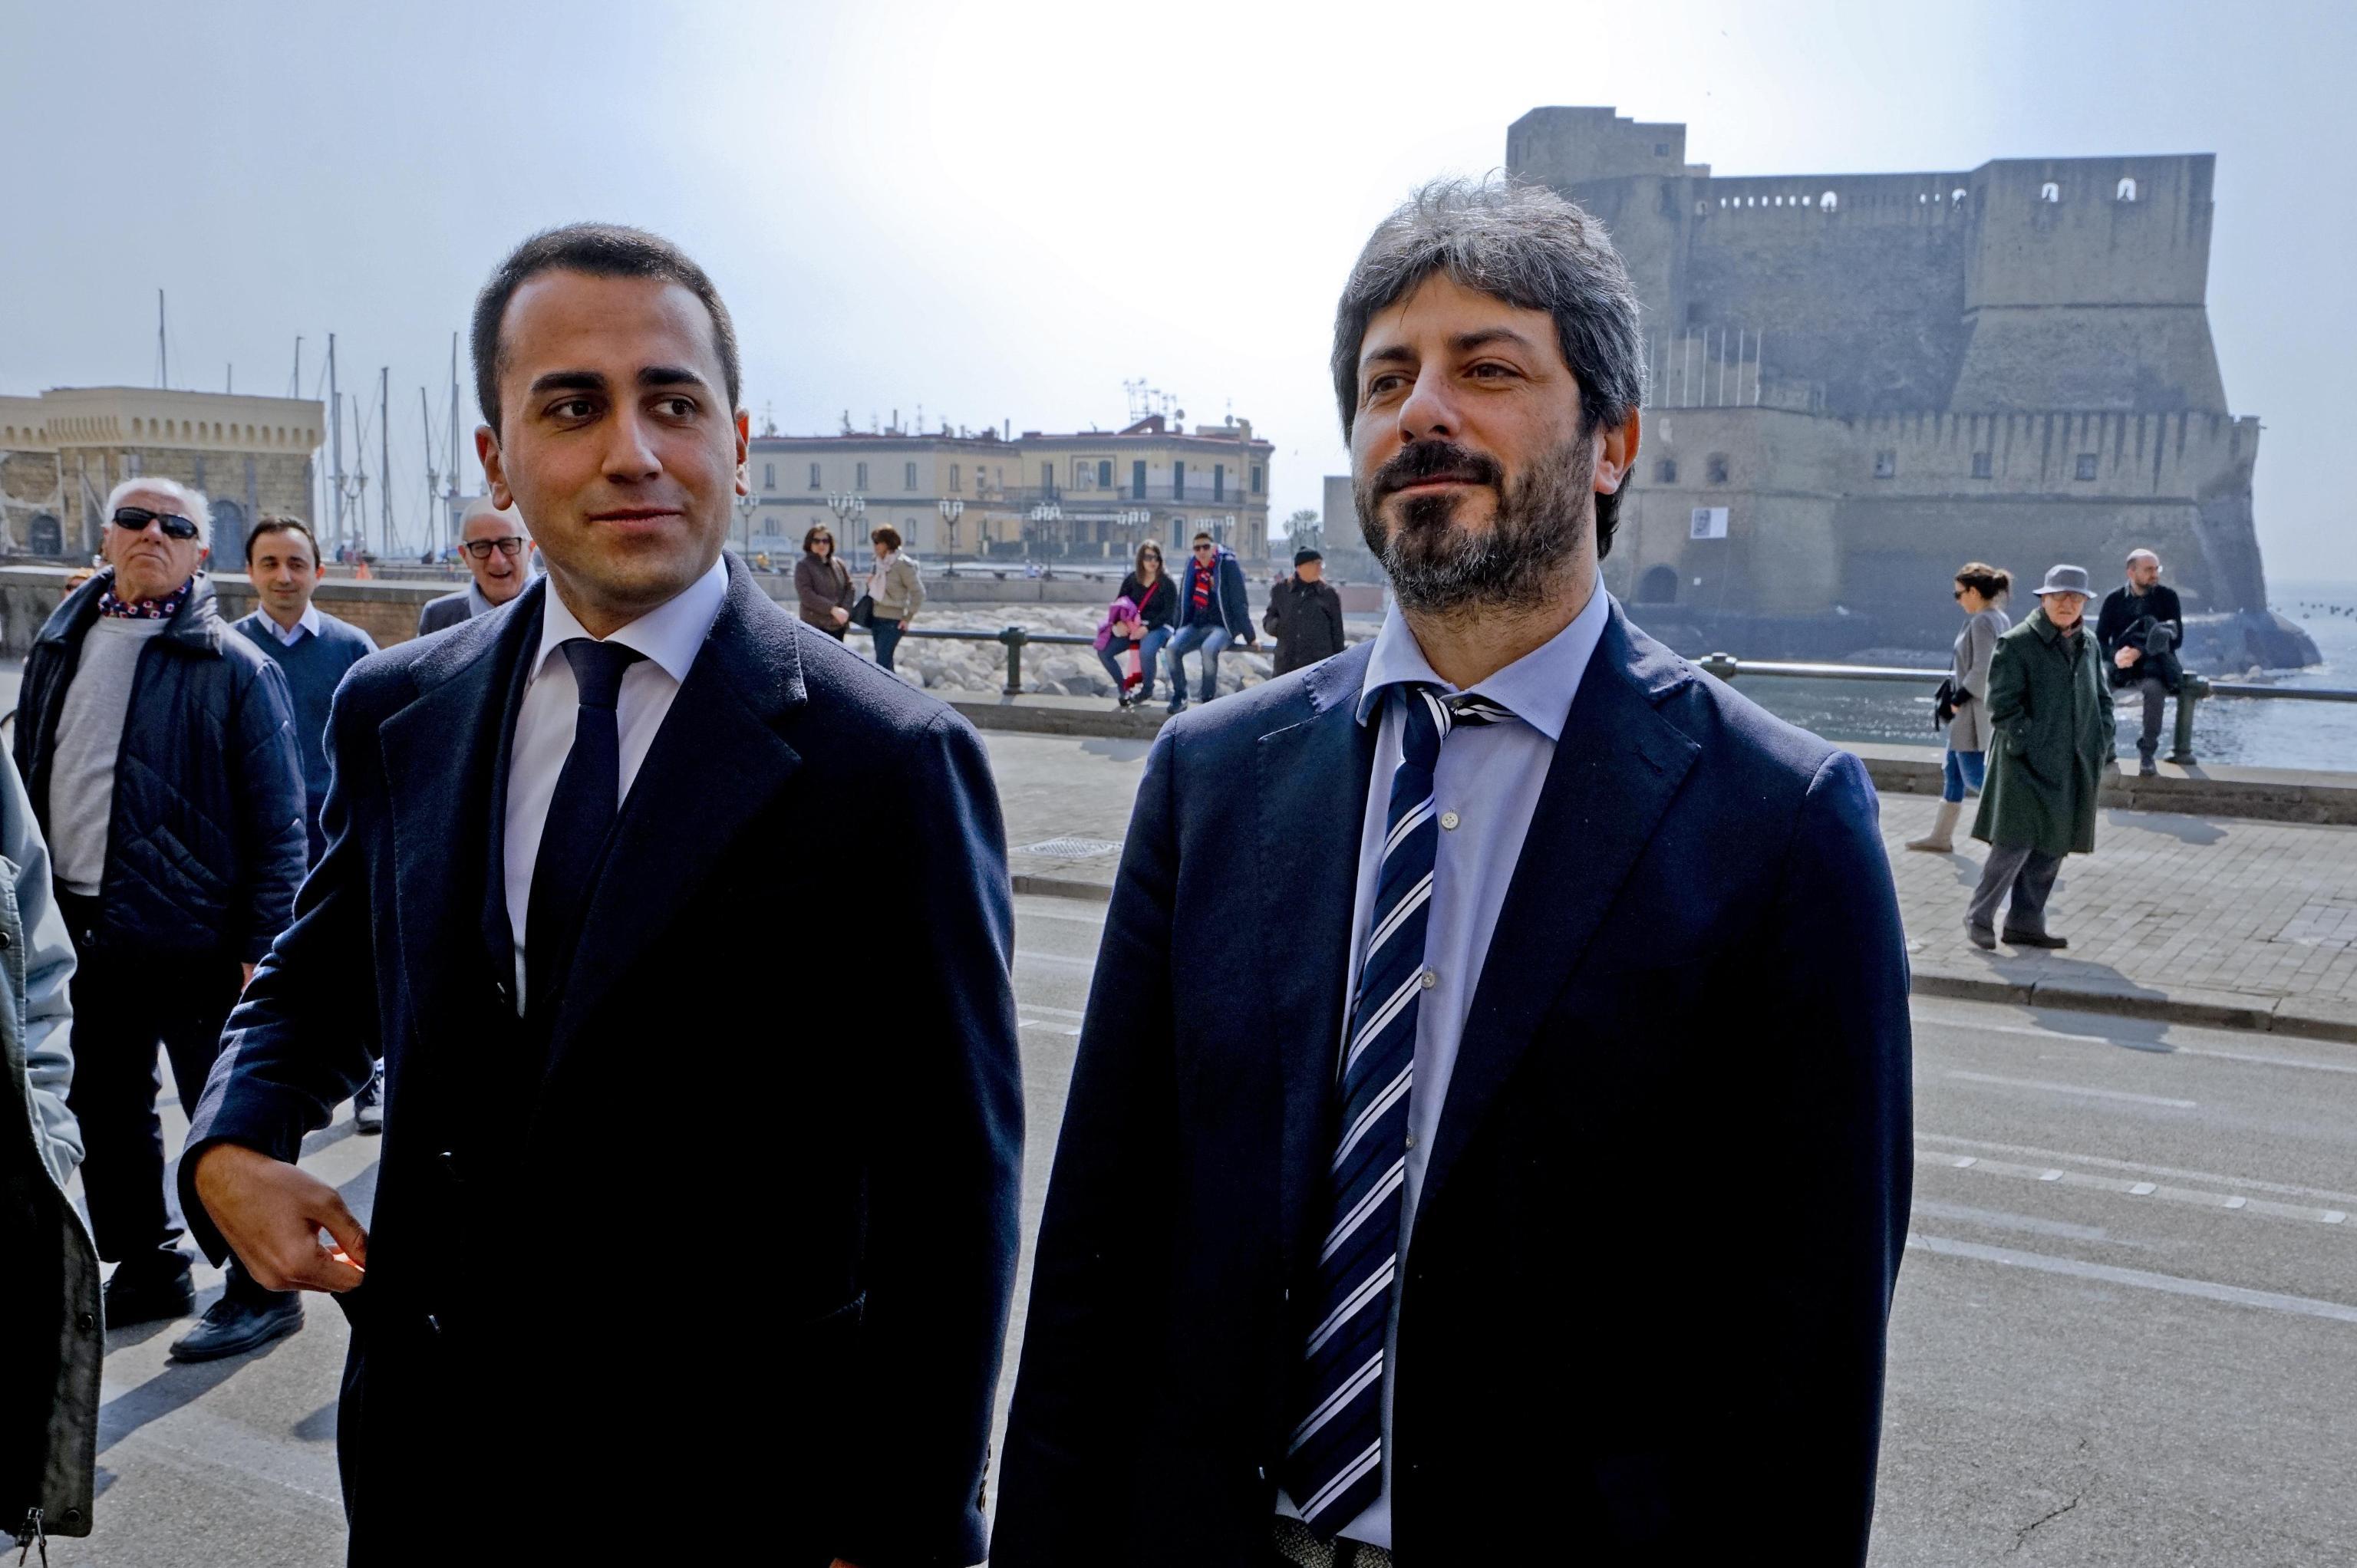 Luigi Di Maio e Roberto Fico in una foto d'archivio del 19 marzo 2016. ANSA / CIRO FUSCO